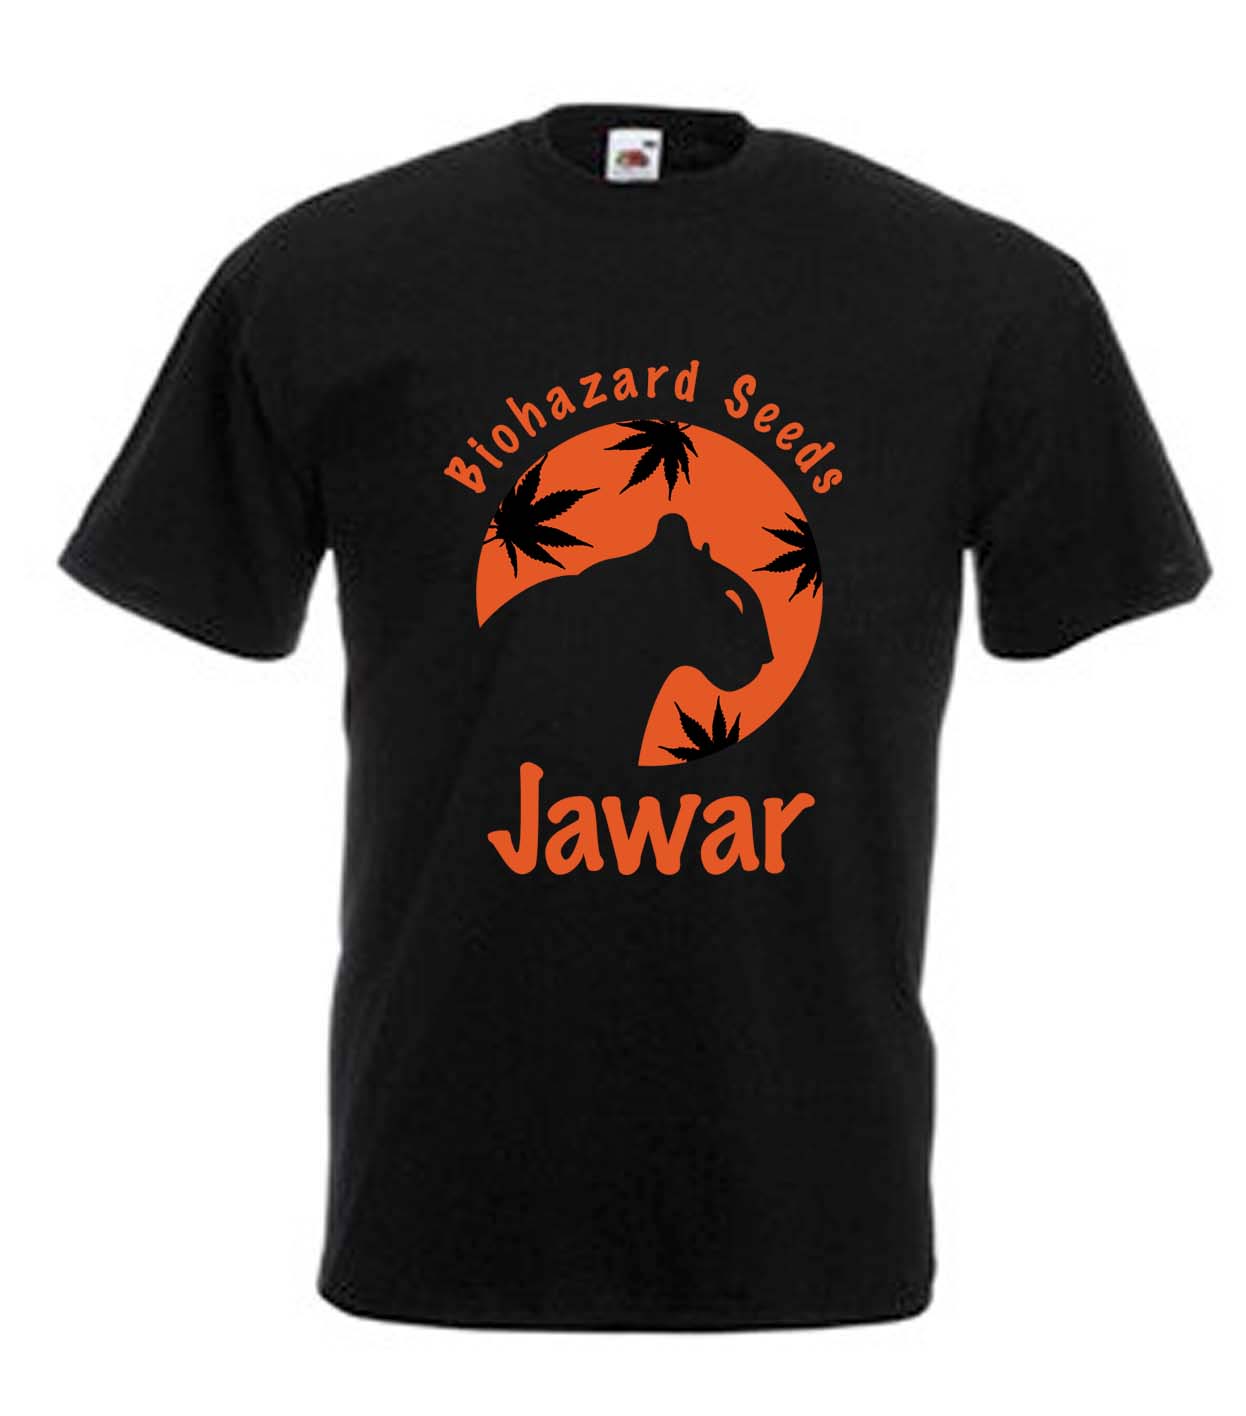 Camiseta Biohazard Seeds Jawar